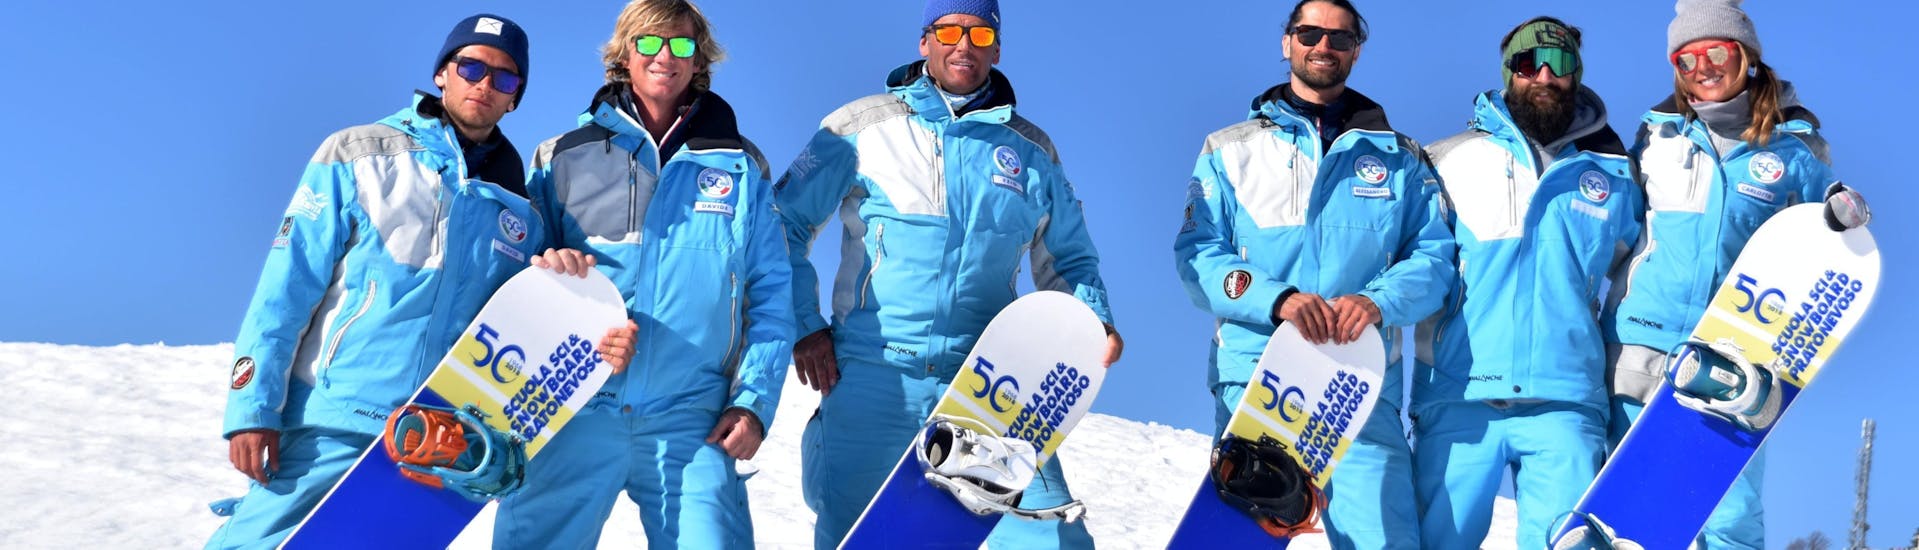 Moniteurs de snowboard souriant à la caméra à Prato Nevoso après une des cours particuliers de snowboard pour enfants et adultes de tous niveaux.